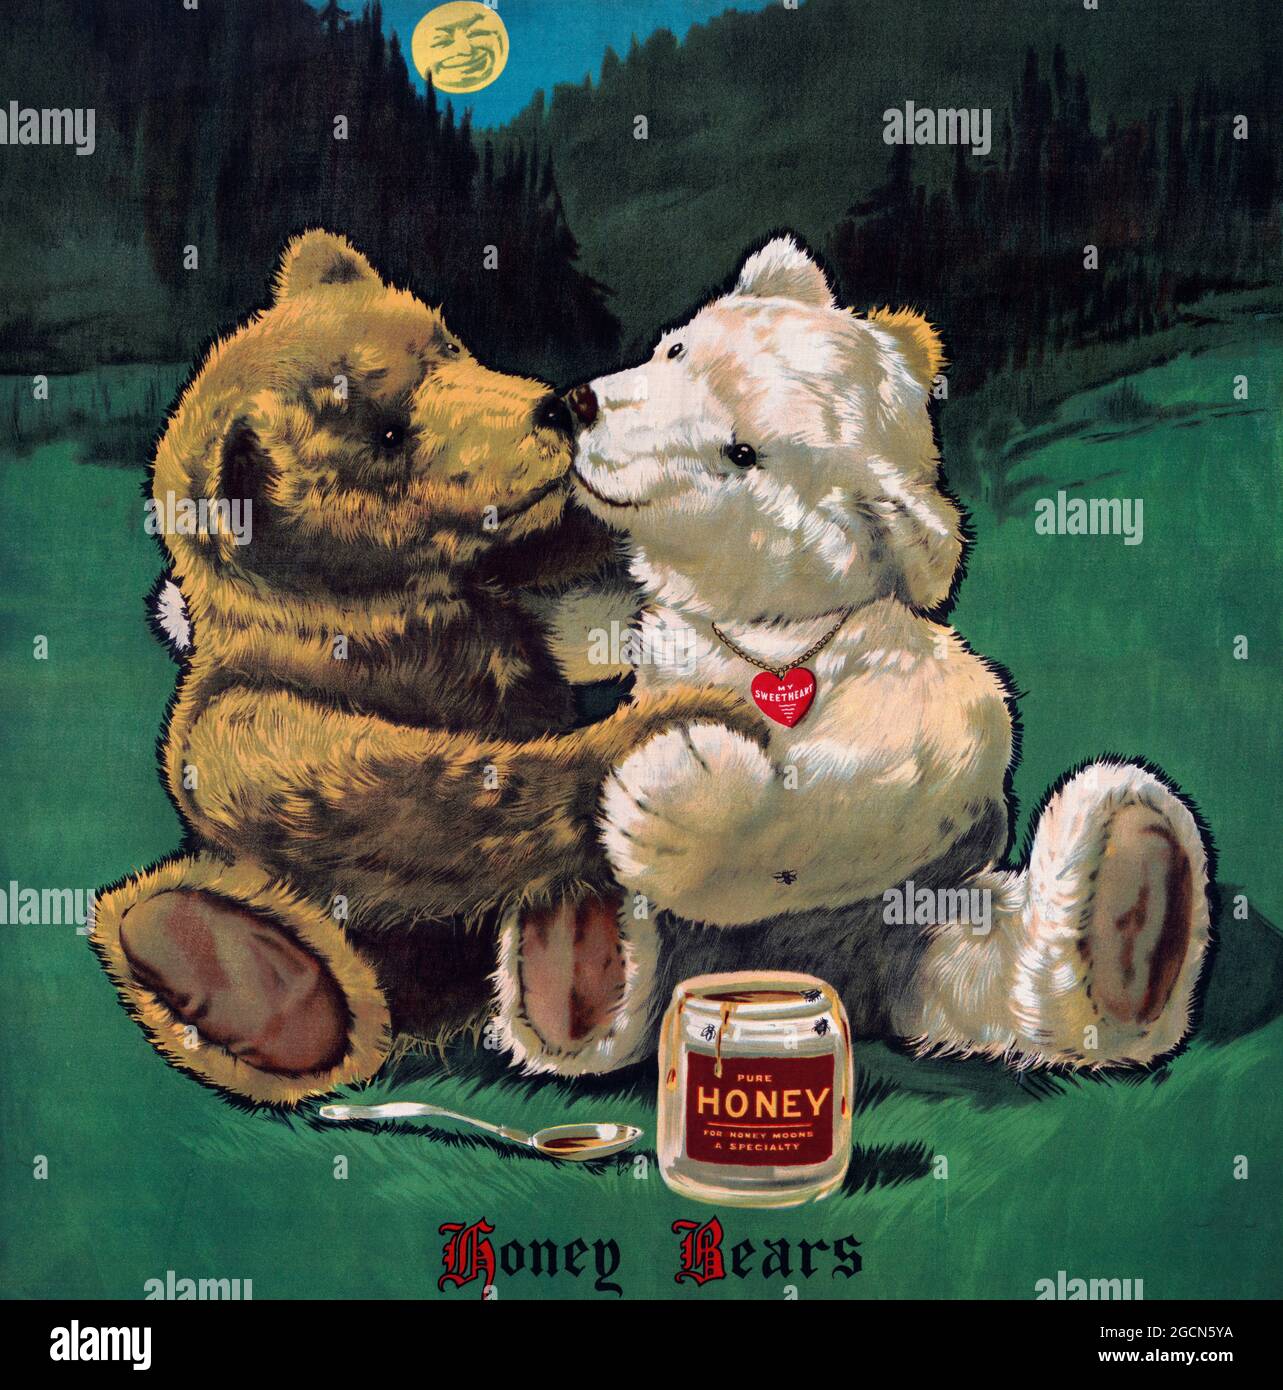 Honigbären - zwei liebende Bären küssen sich mit einem Glas Honig in der Nähe Stockfoto